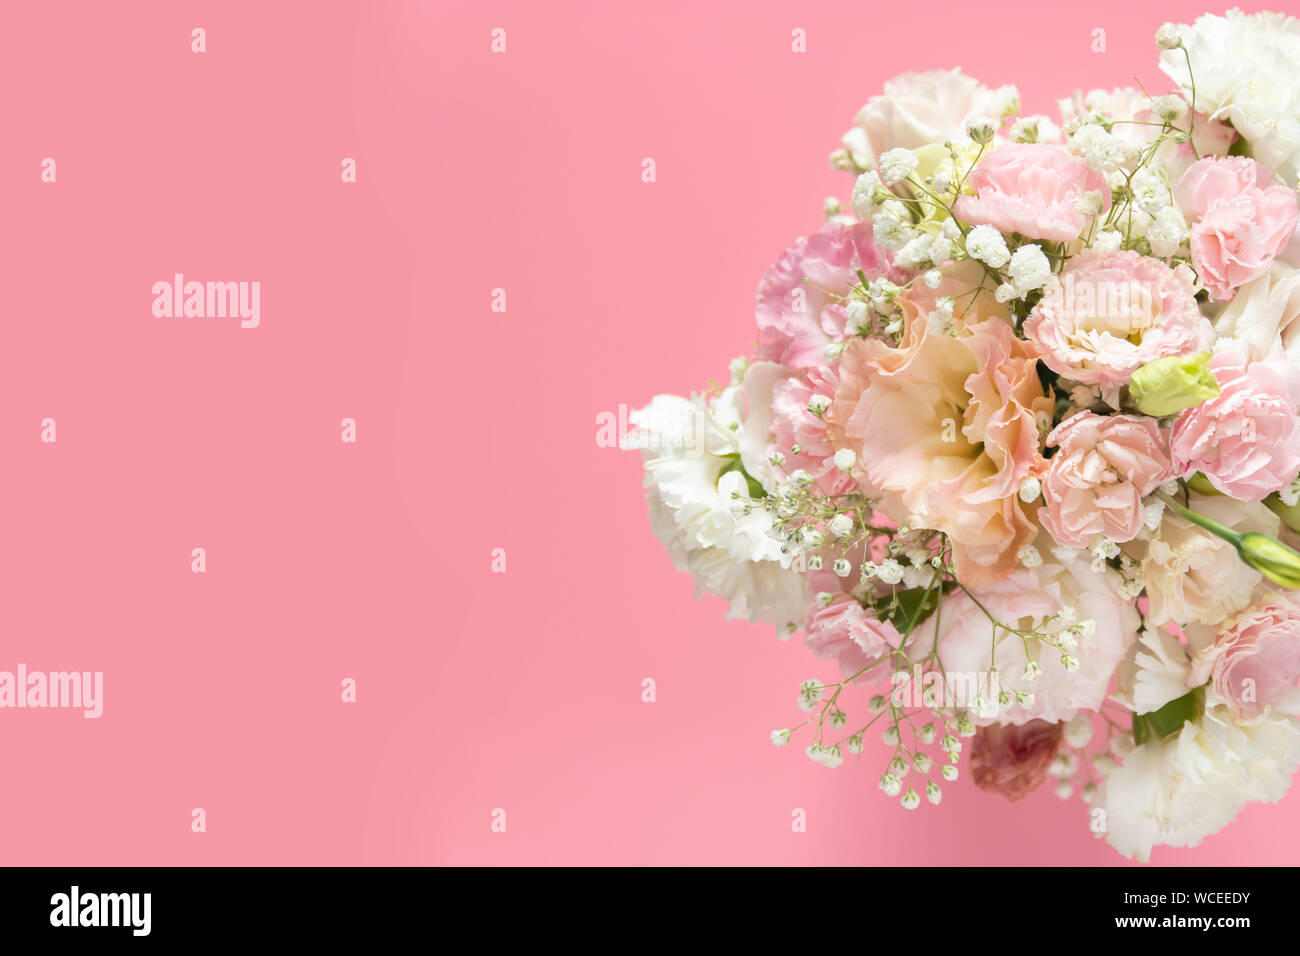 Vista superior del bonito y romántico ramo de flores de primavera frescos sobre fondo de color rosa con espacio de copia Foto de stock